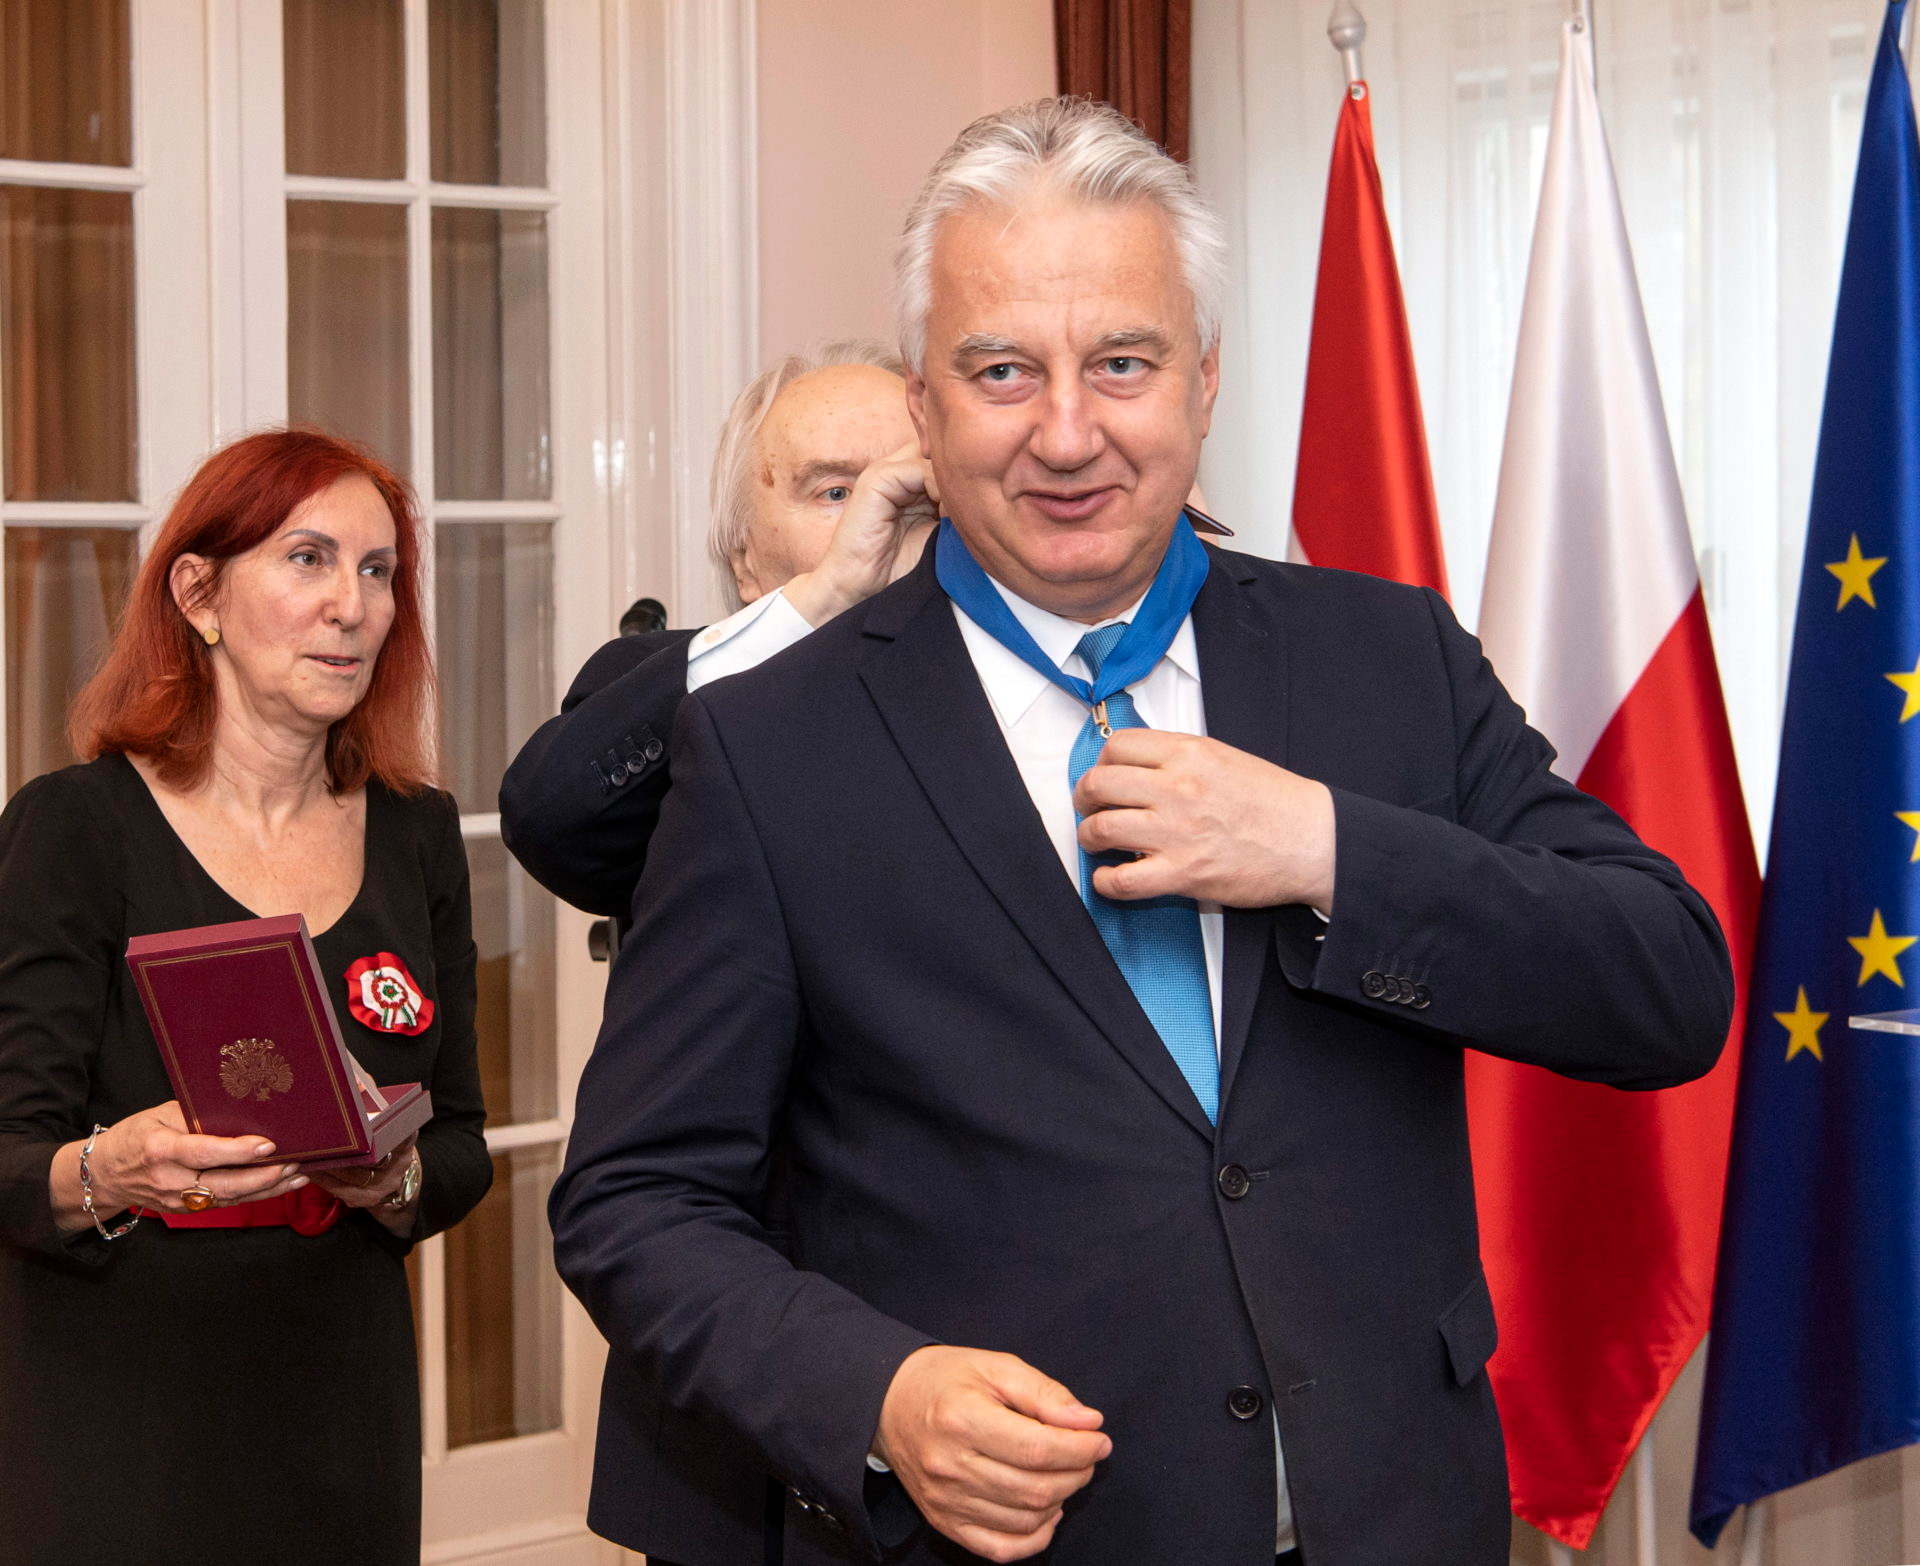 Magas lengyel állami kitüntetést kapott Semjén Zsolt